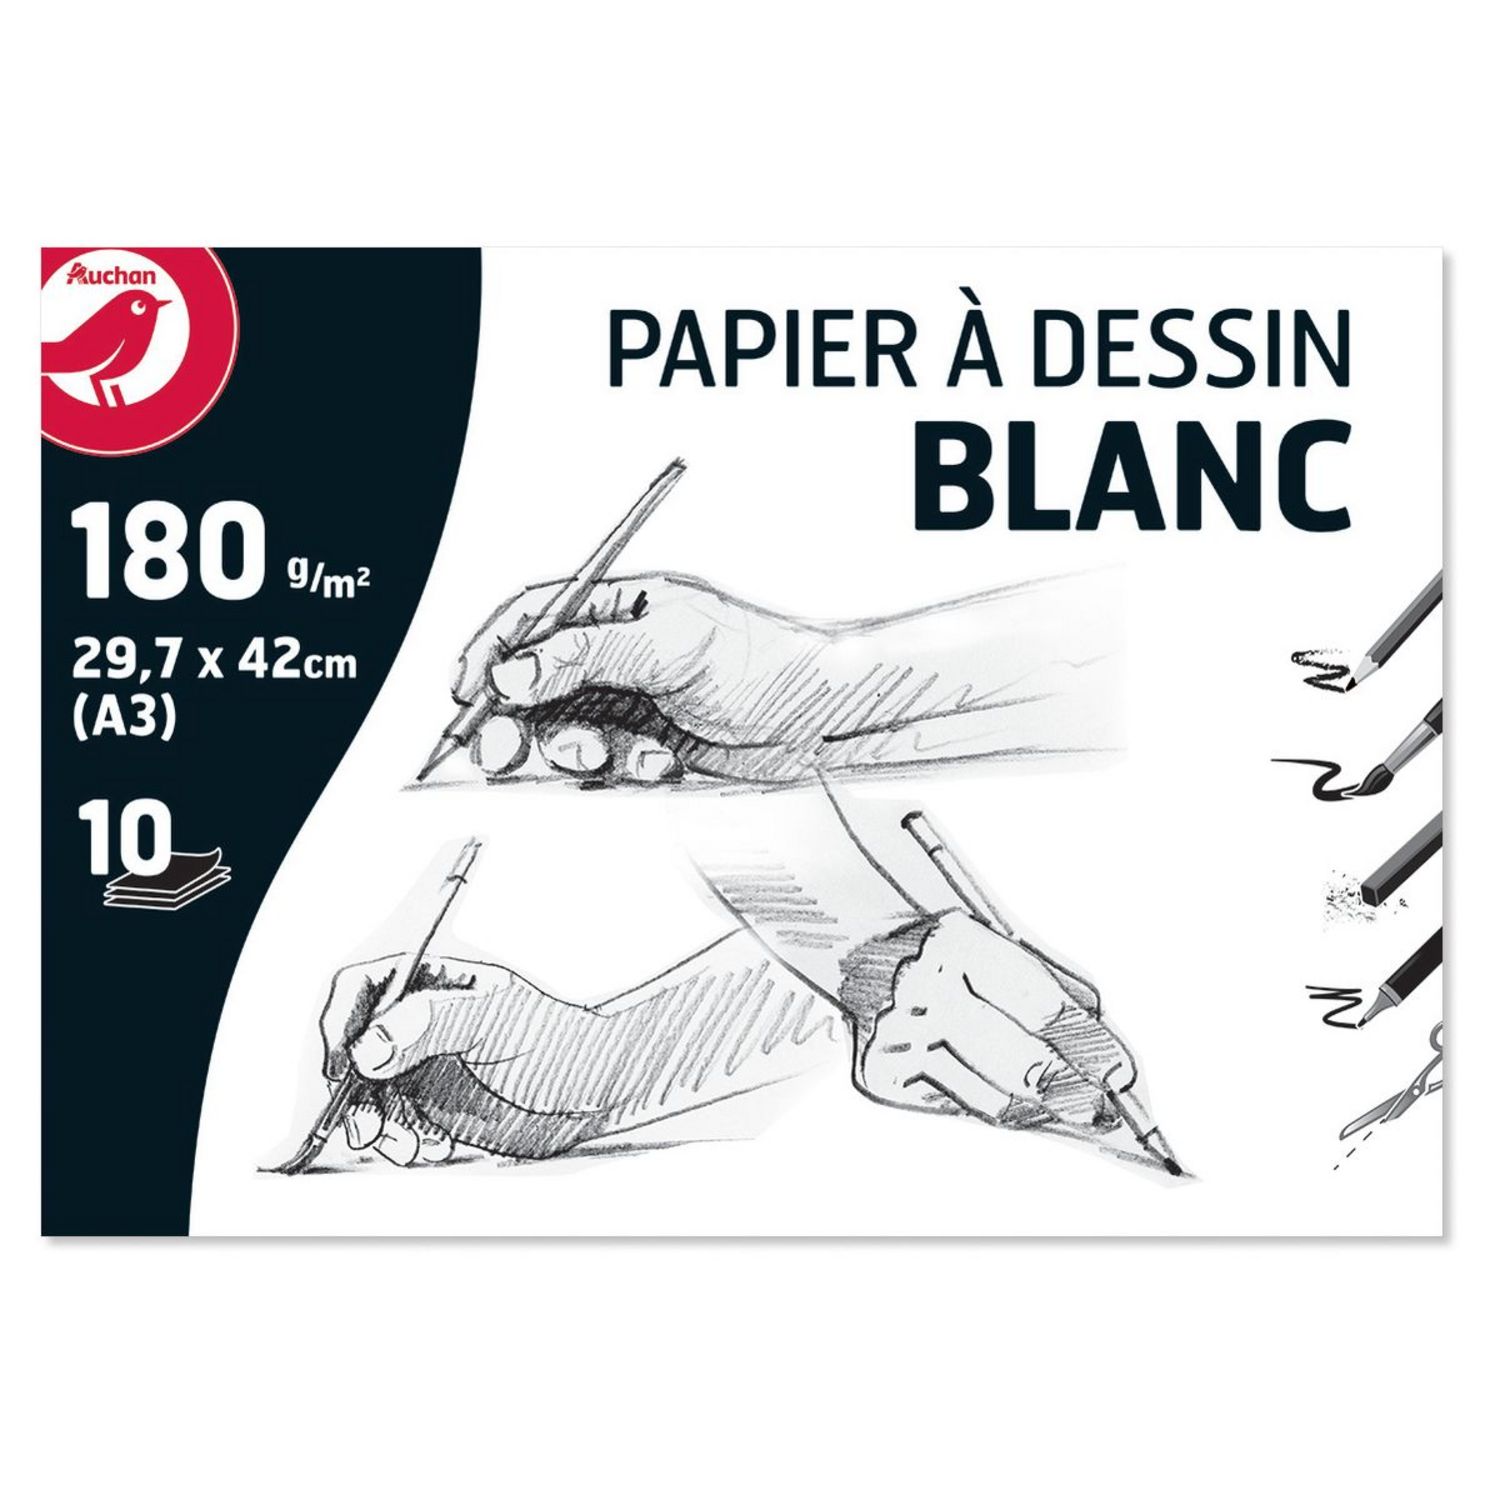 Pochette Papier Dessin à Grain blanc 10 feuilles A3 180g - Papiers